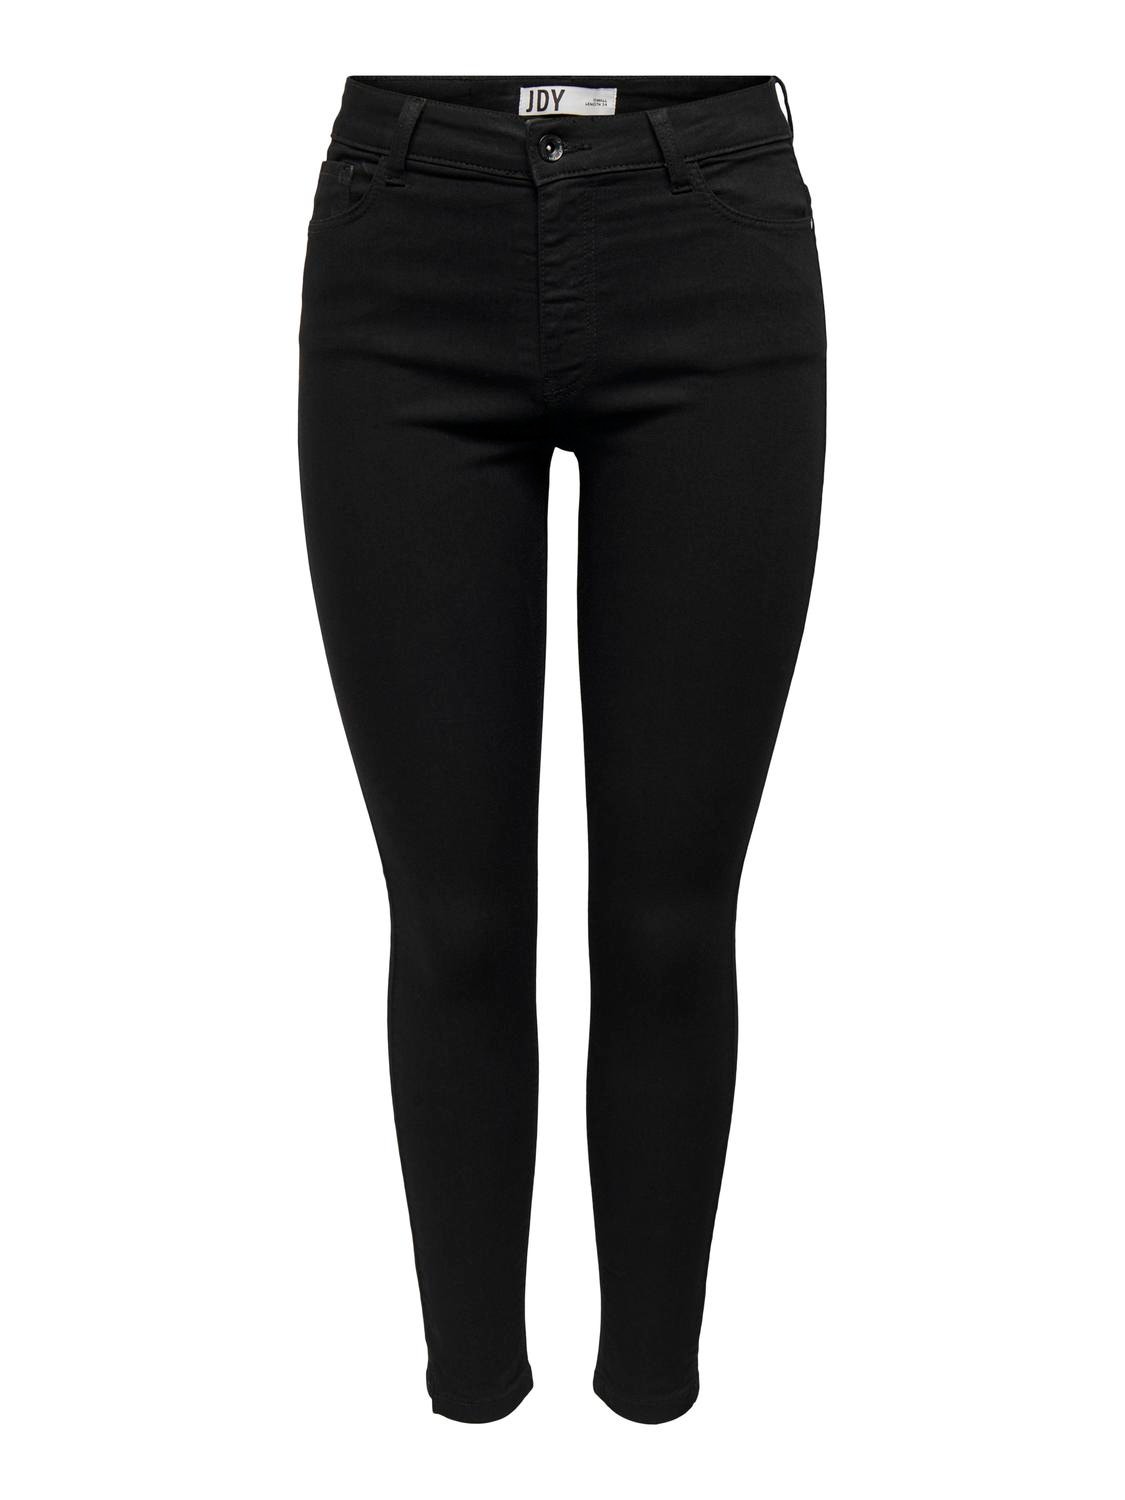 ONLY Skinny Fit High waist Side slits Jeans -Black Denim - 15290503